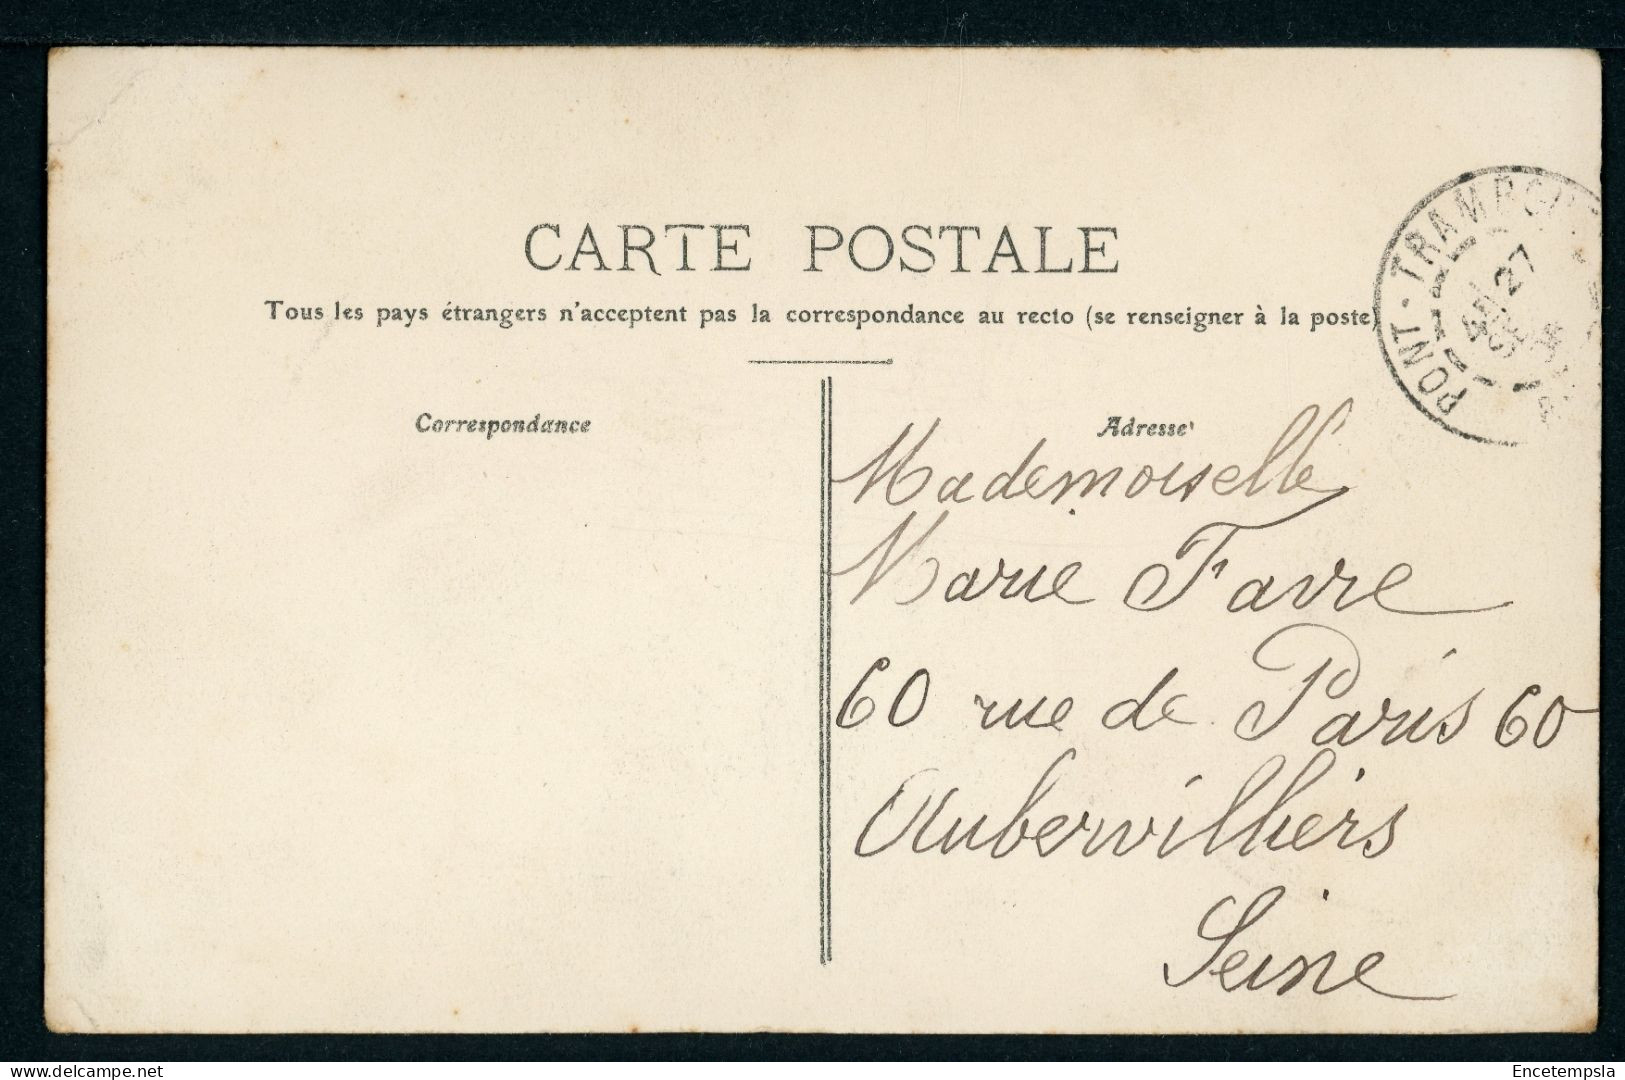 CPA - Carte Postale - France - Pont Trambouze - Quartier De L'Eglise (CP24688) - Cours-la-Ville